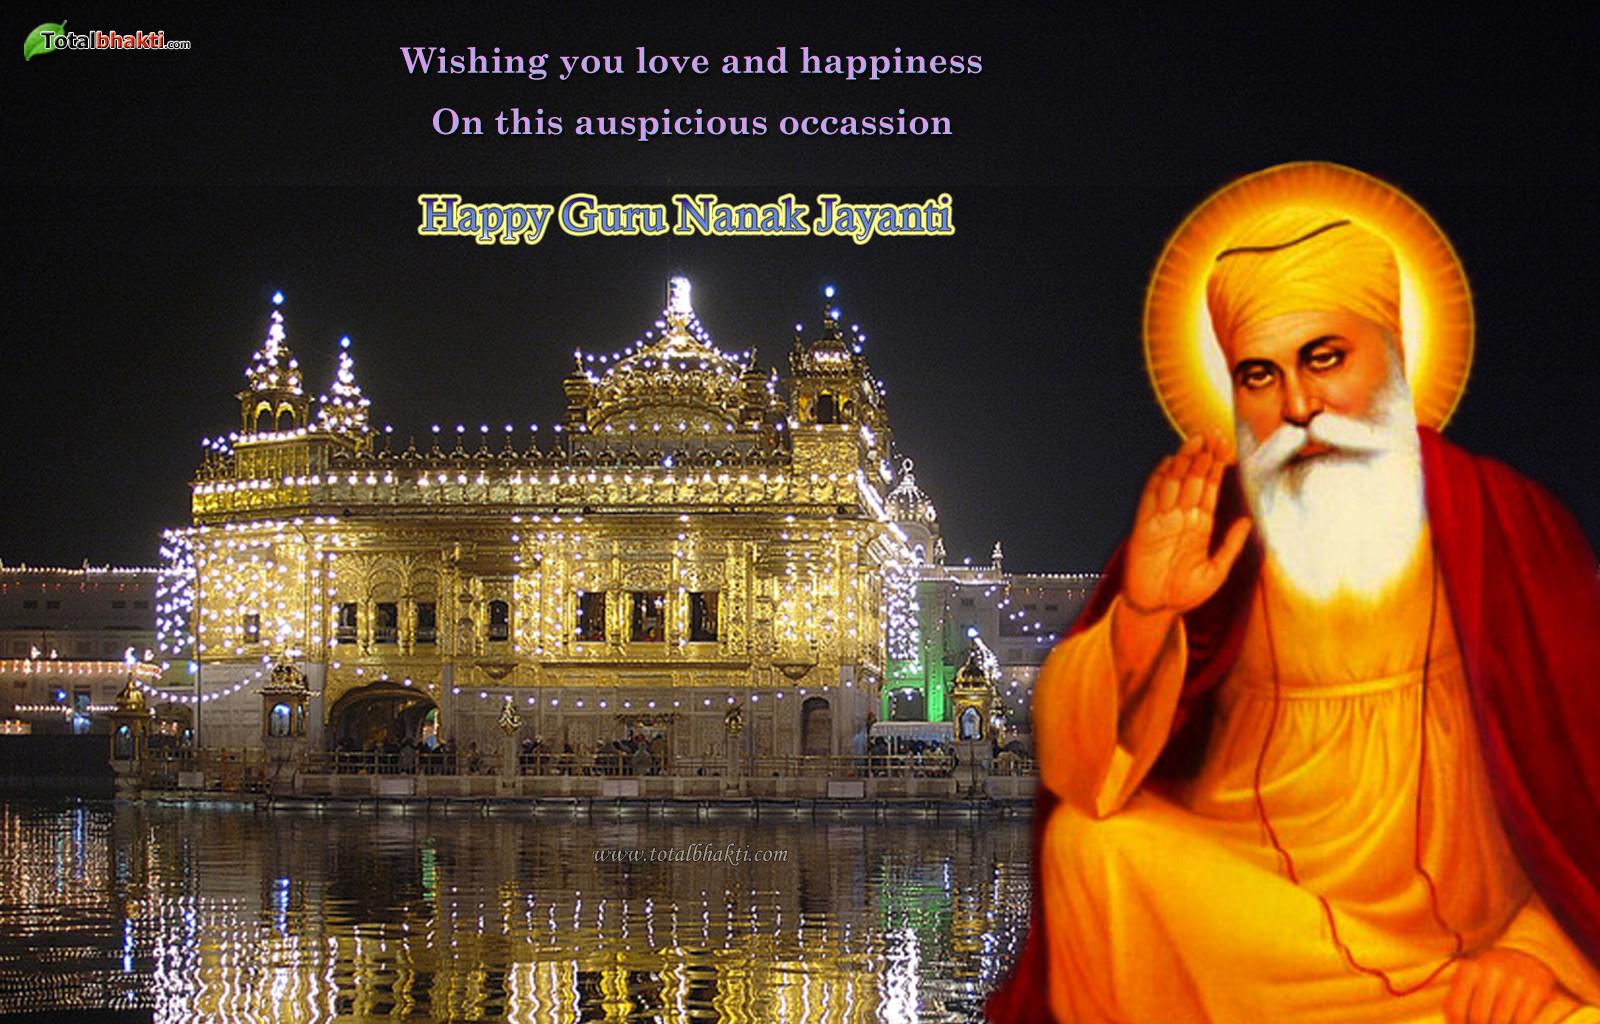 Guru Nanak Gurpurab Wish Picture And Image